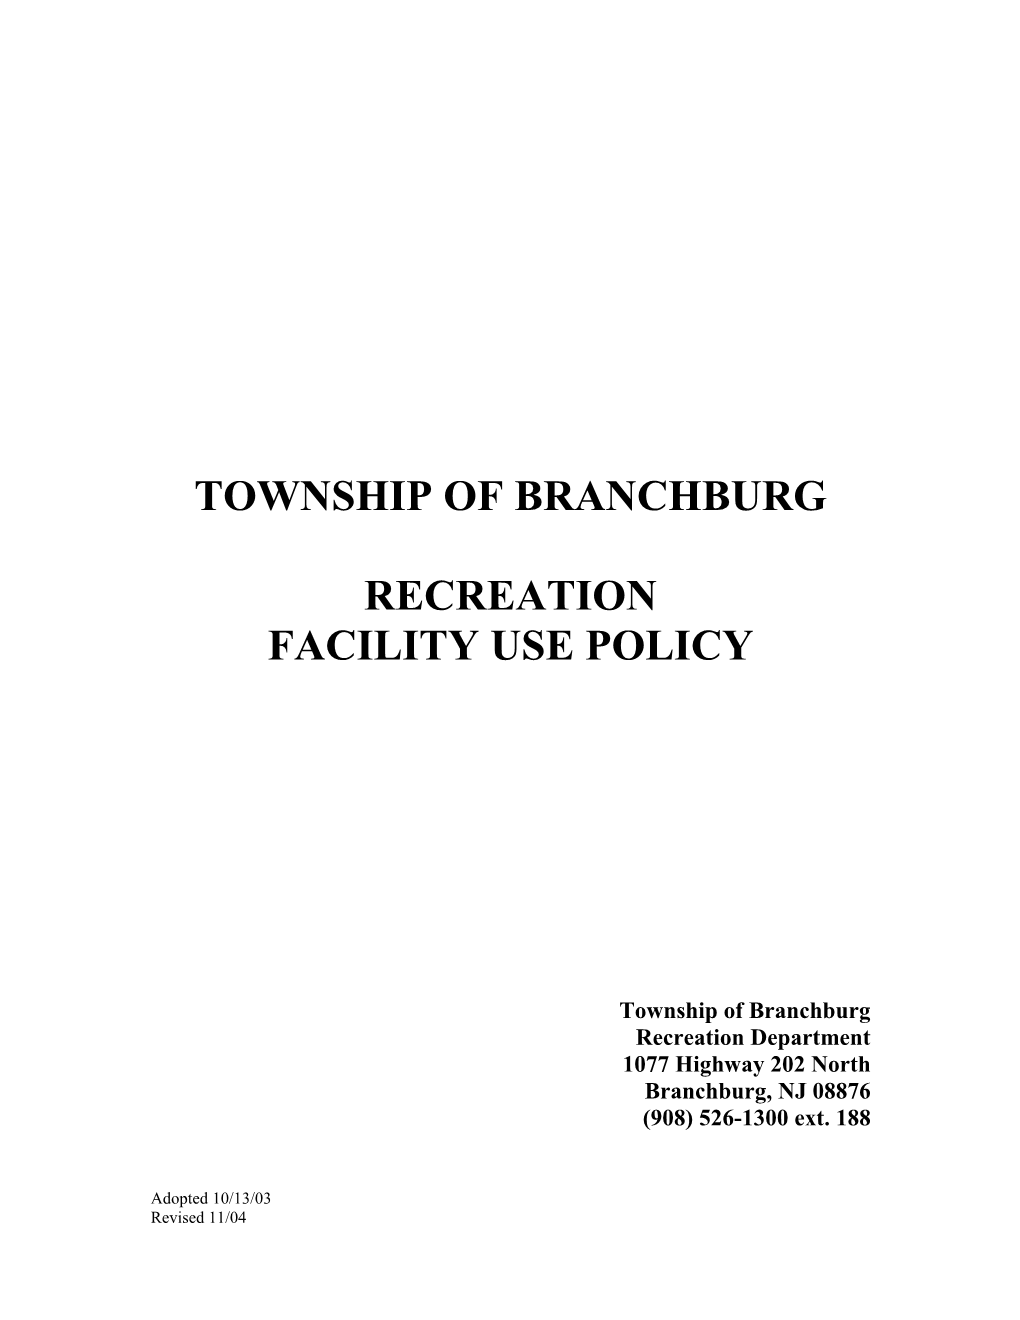 Township of Branchburg